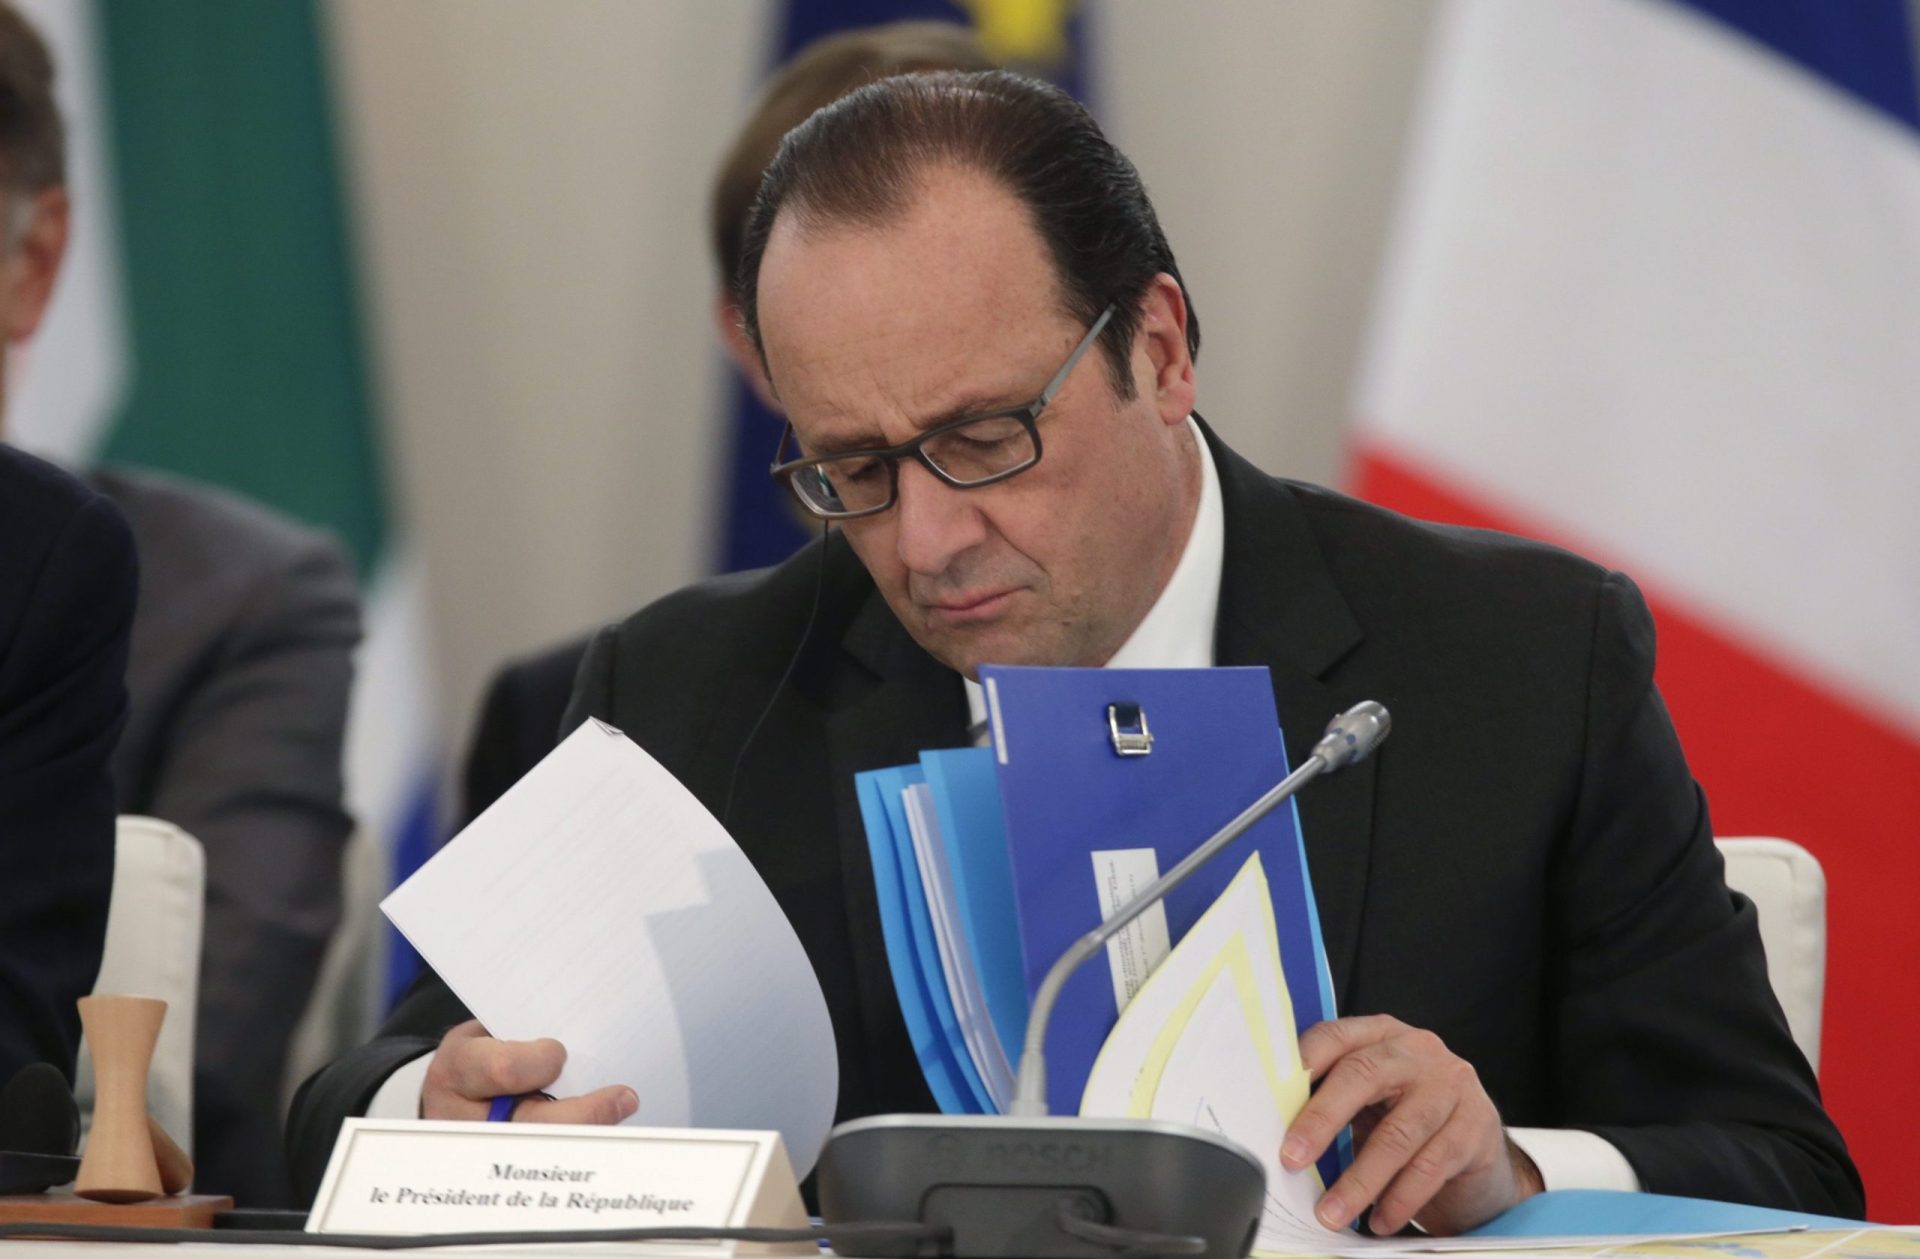 Popularidade de Hollande subiu 22% após os ataques terroristas em Paris